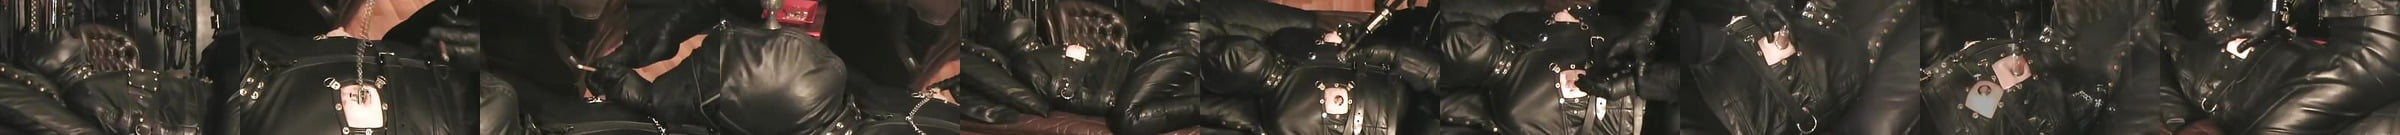 The Leather Domina Leather Fetish Total Leather Bondage Xhamster